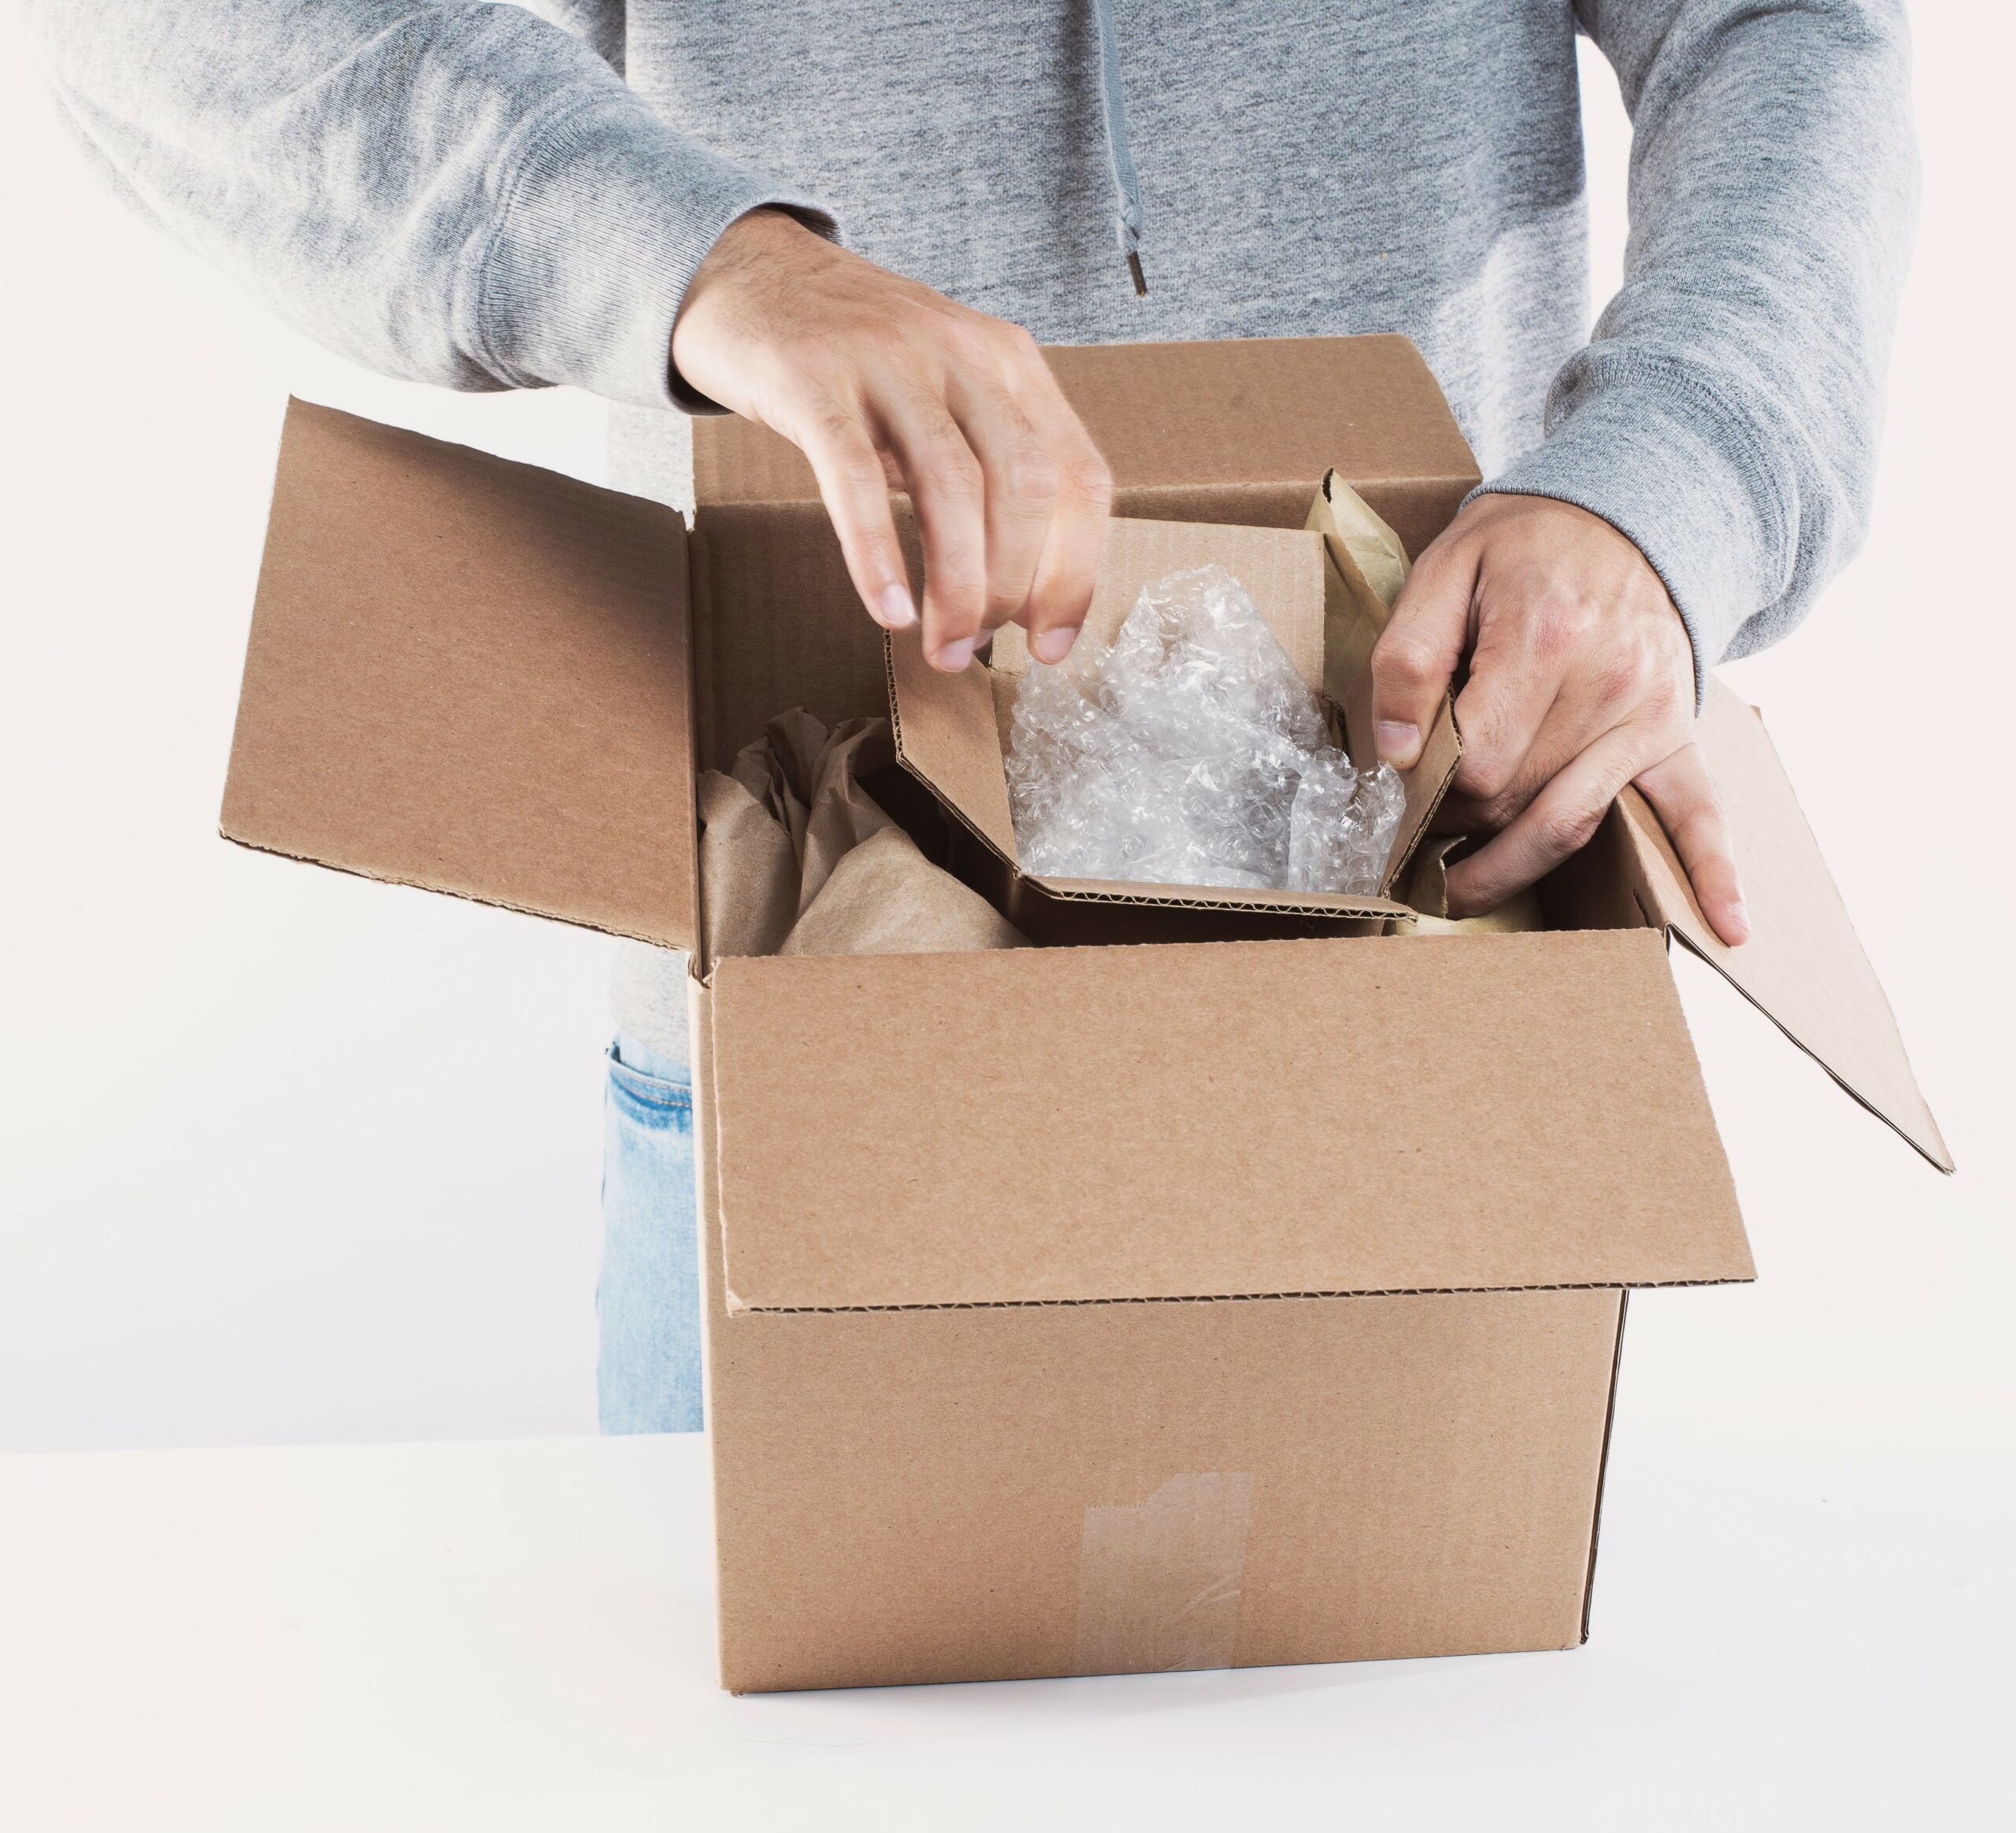 Comment bien emballer vos produits pour la livraison ? - Shippr